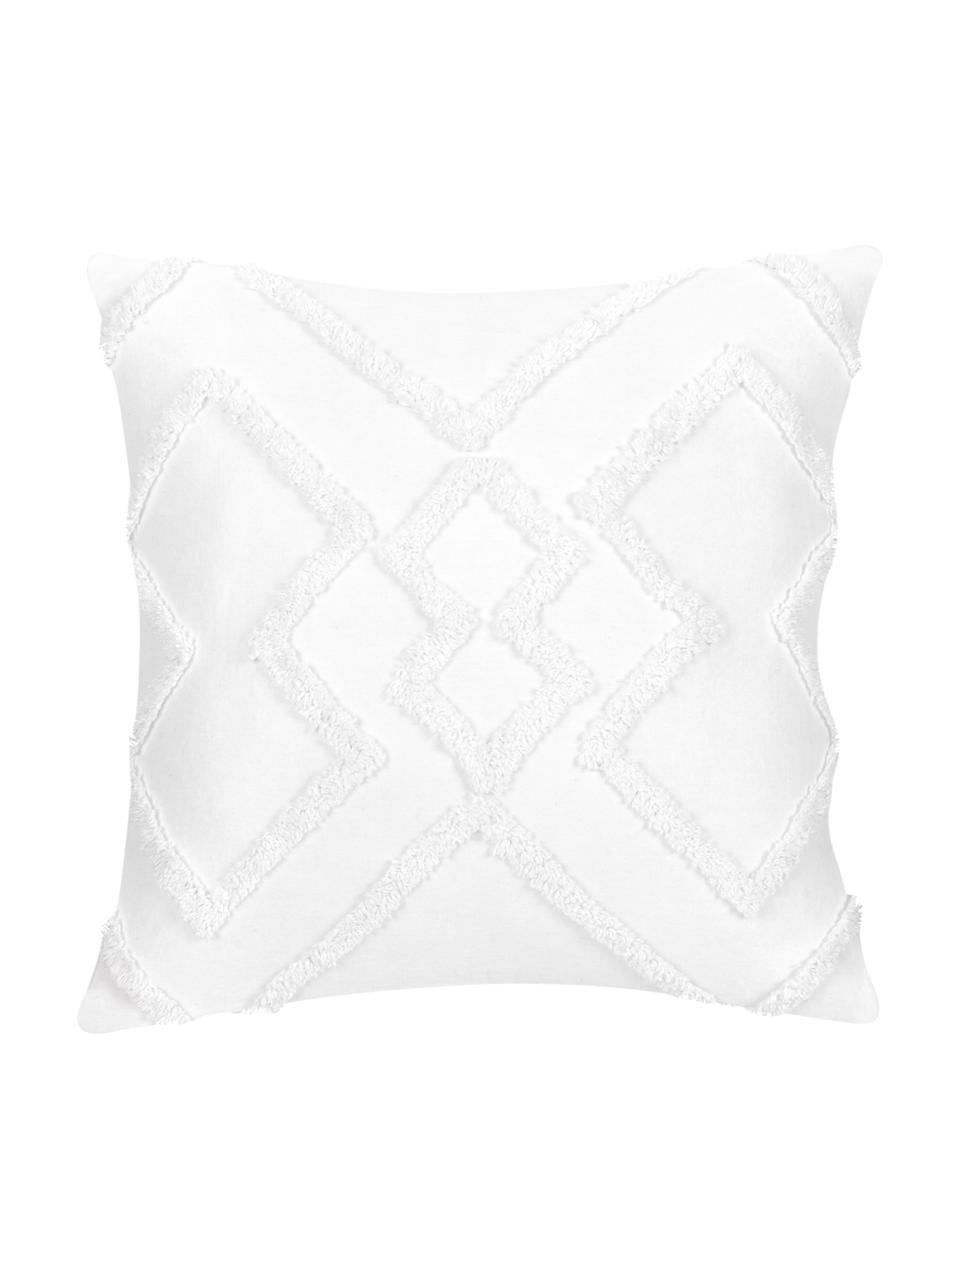 Kissenhülle Faith in Weiß mit getuftetem Rautenmuster, 100% Baumwolle, Weiß, 50 x 50 cm